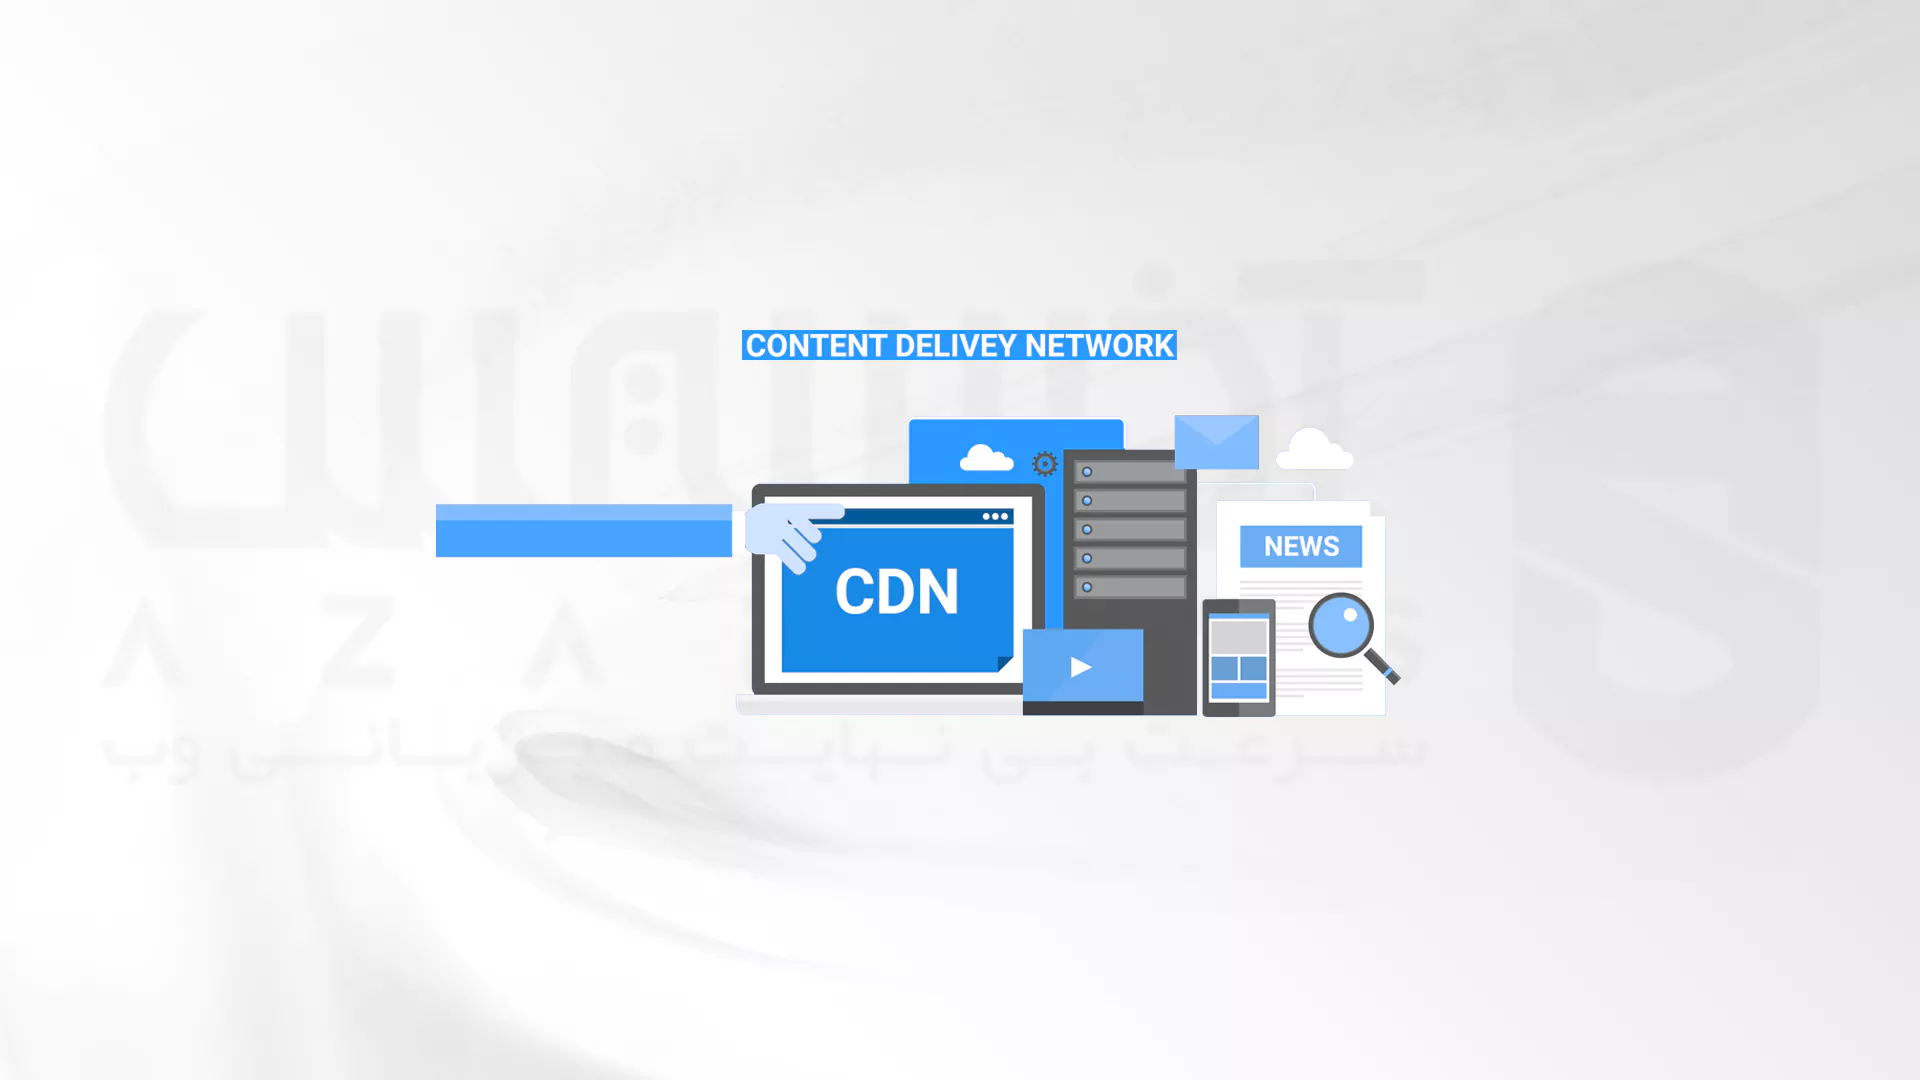 تحویل محتوا بین 2 وب سایت با CDN و بدون استفاده از آن